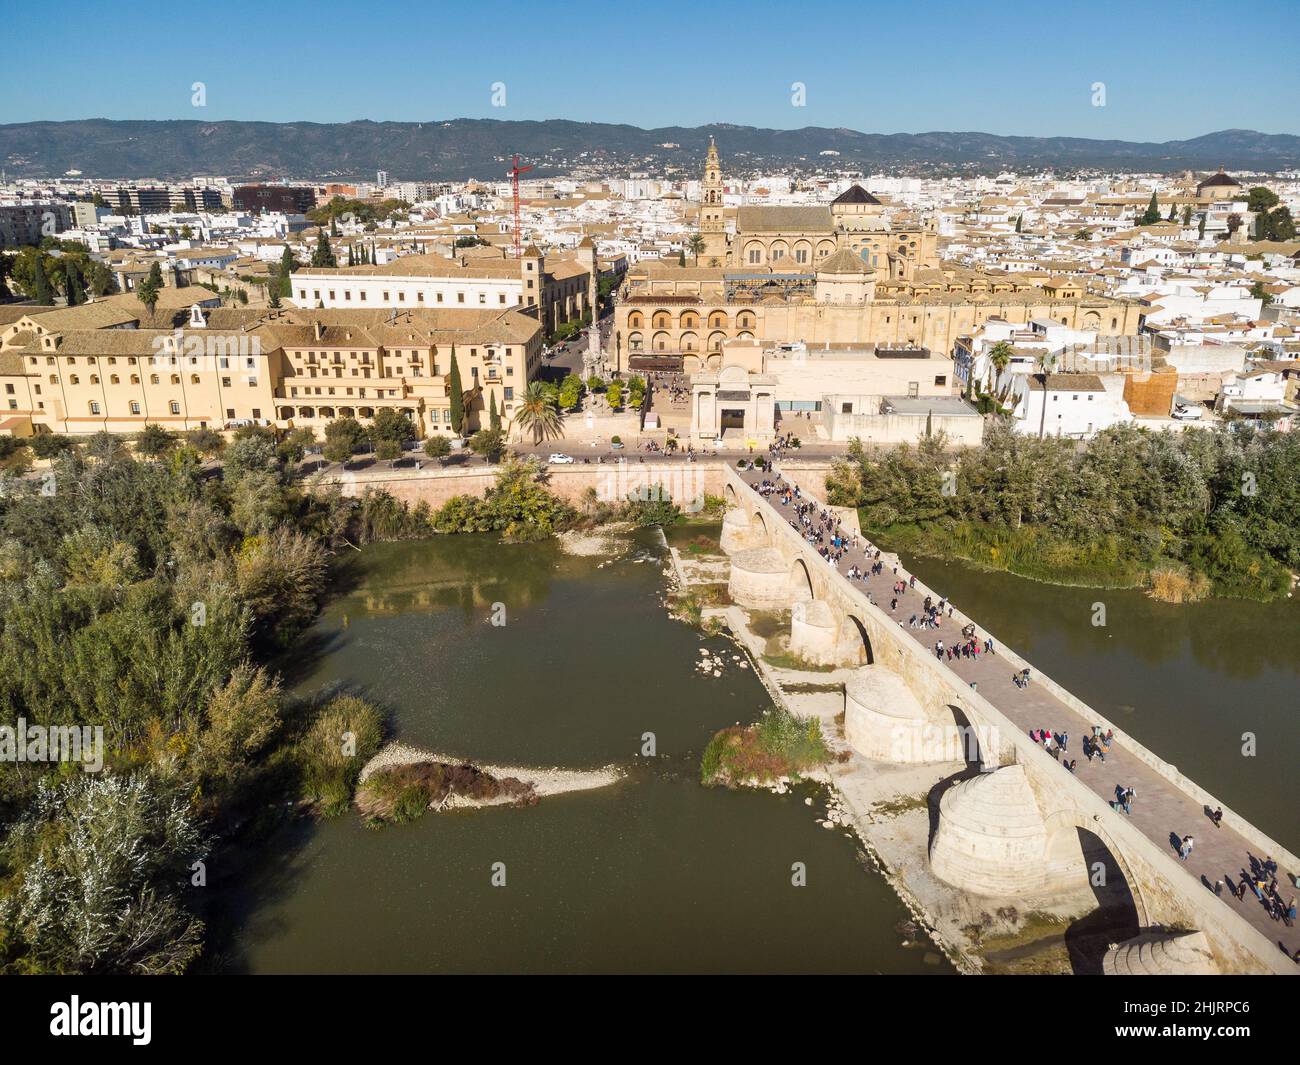 Espectacular vista aérea del famoso puente romano sobre el río Guadalquivir a lo largo del casco antiguo de Córdoba, en Andalucía, al sur de España, en un día soleado Foto de stock